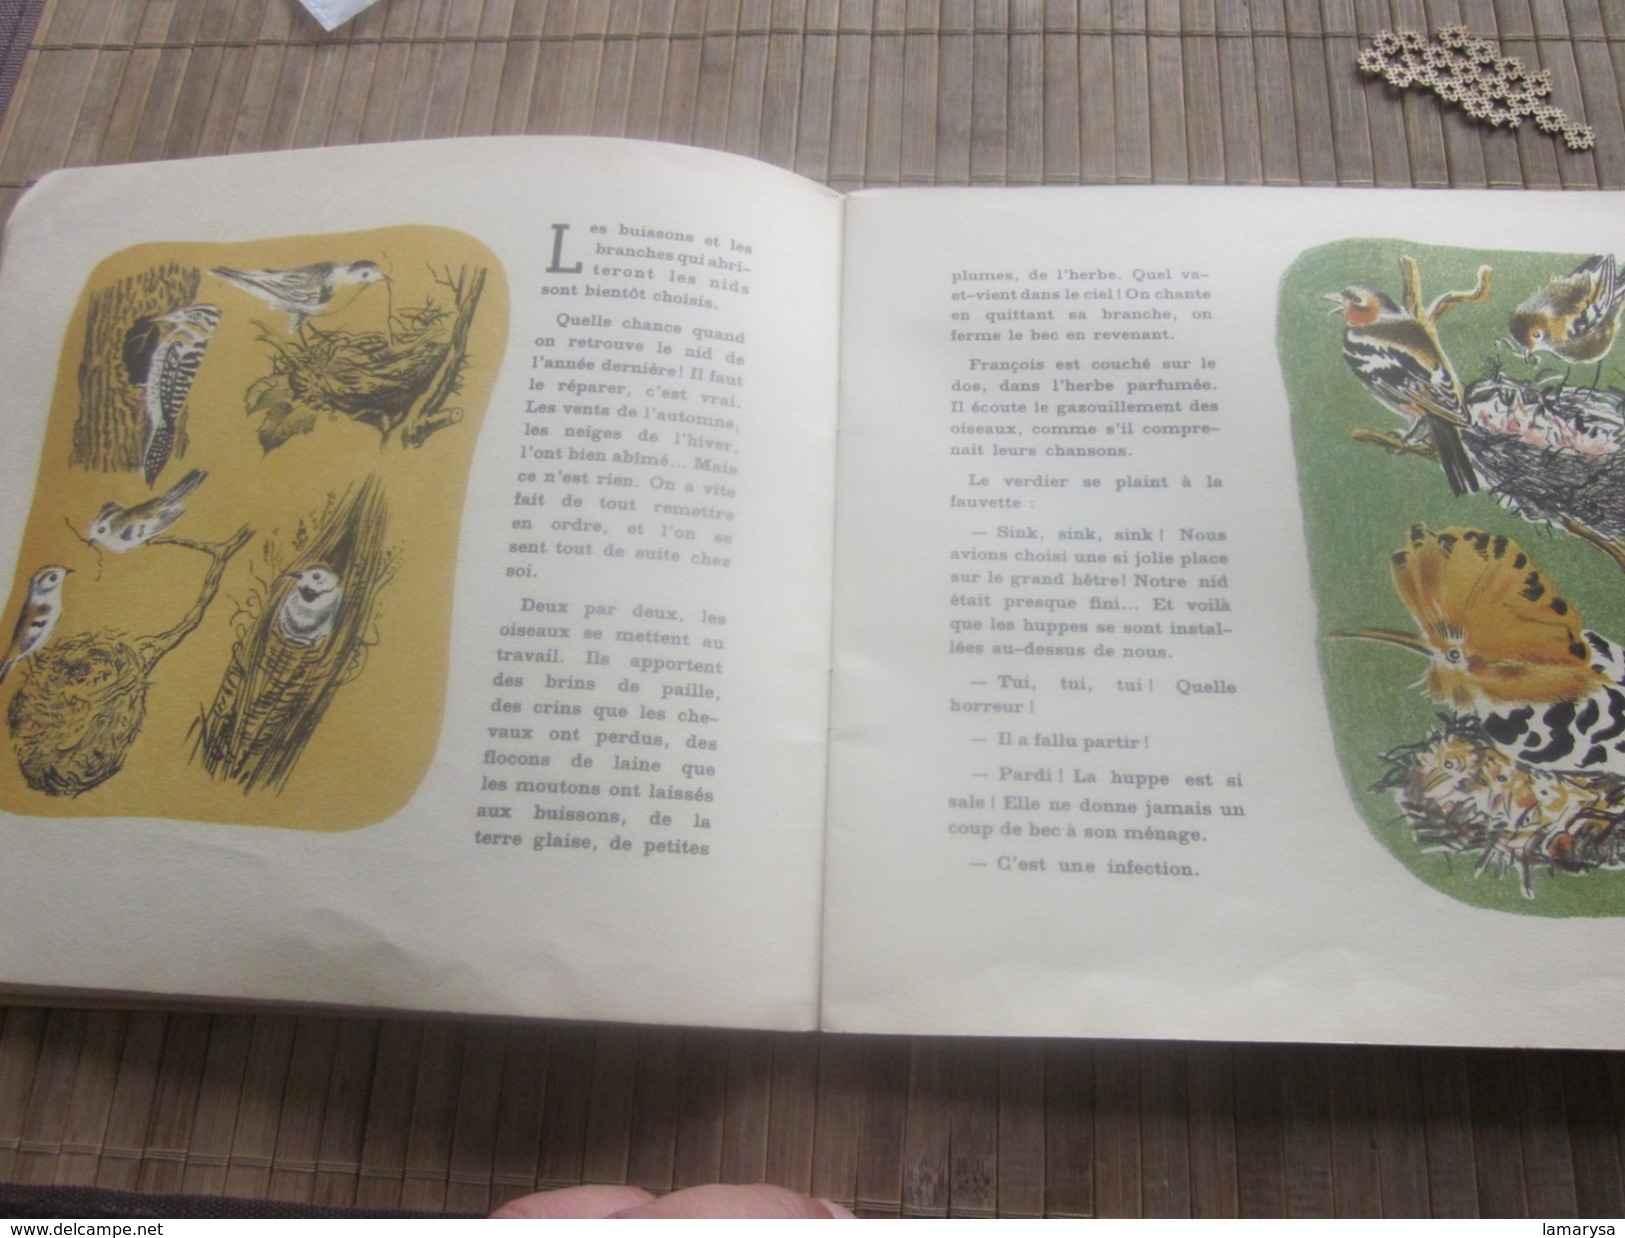 1939 COUCOU Livre pour Enfant Album du Père Castor par LIDA IMAGES illustrations de F. ROJAKOVSKY Flammarion Lire,voir